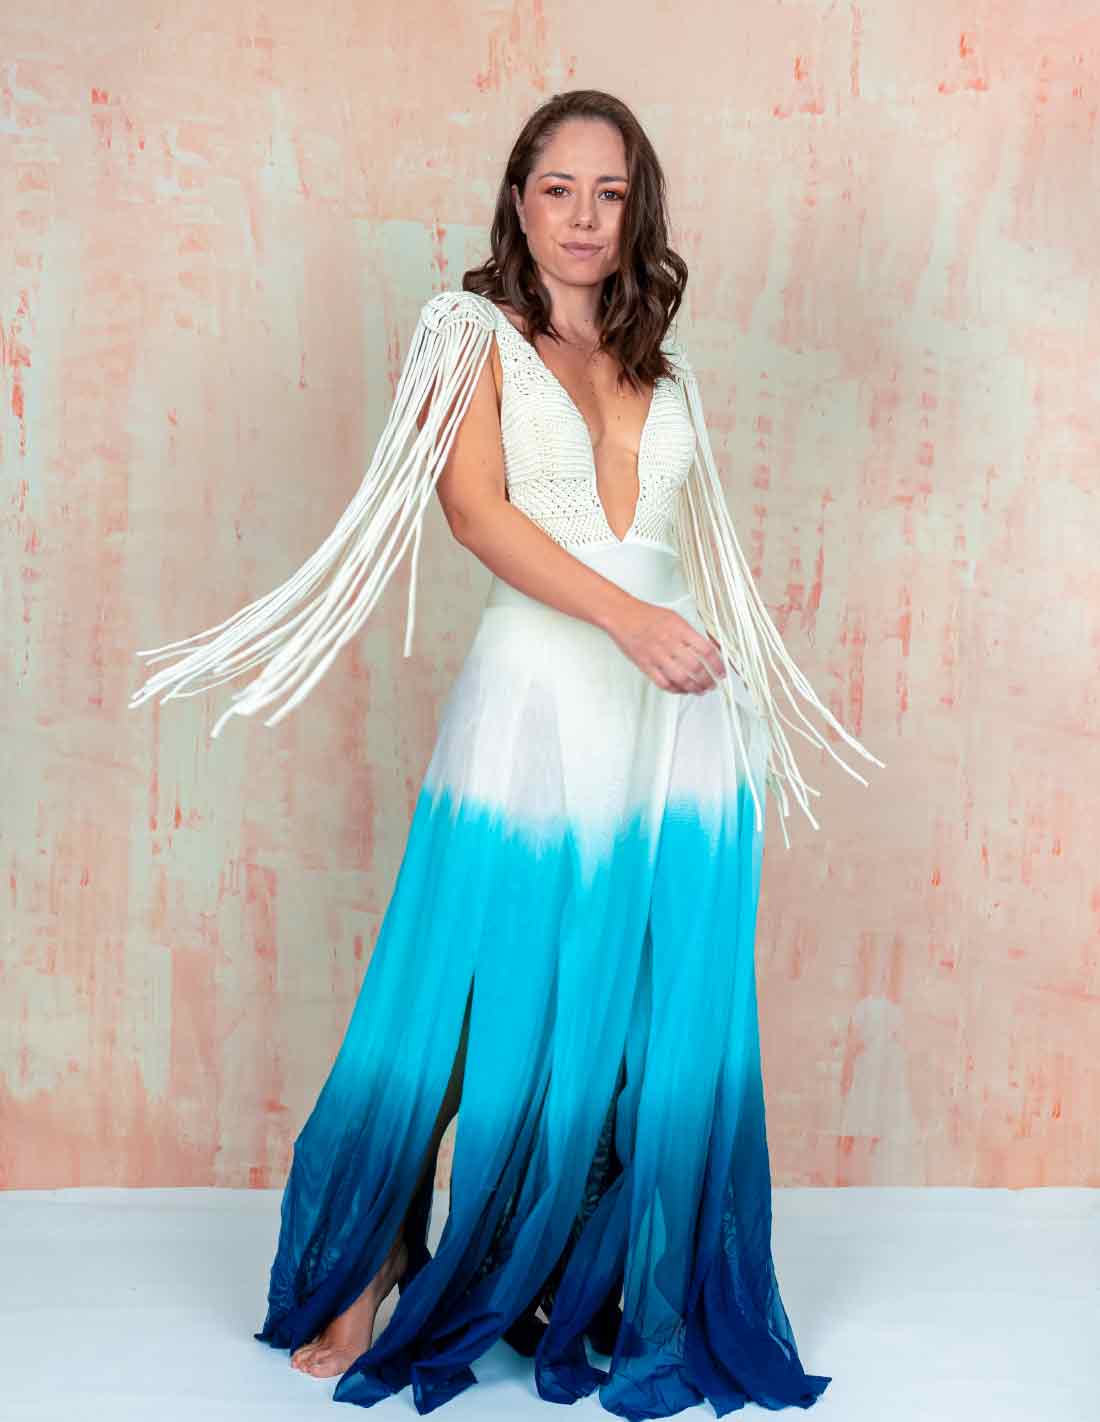 Umbra Dress Cloudy Blue - Dress - Entreaguas Wearable Art